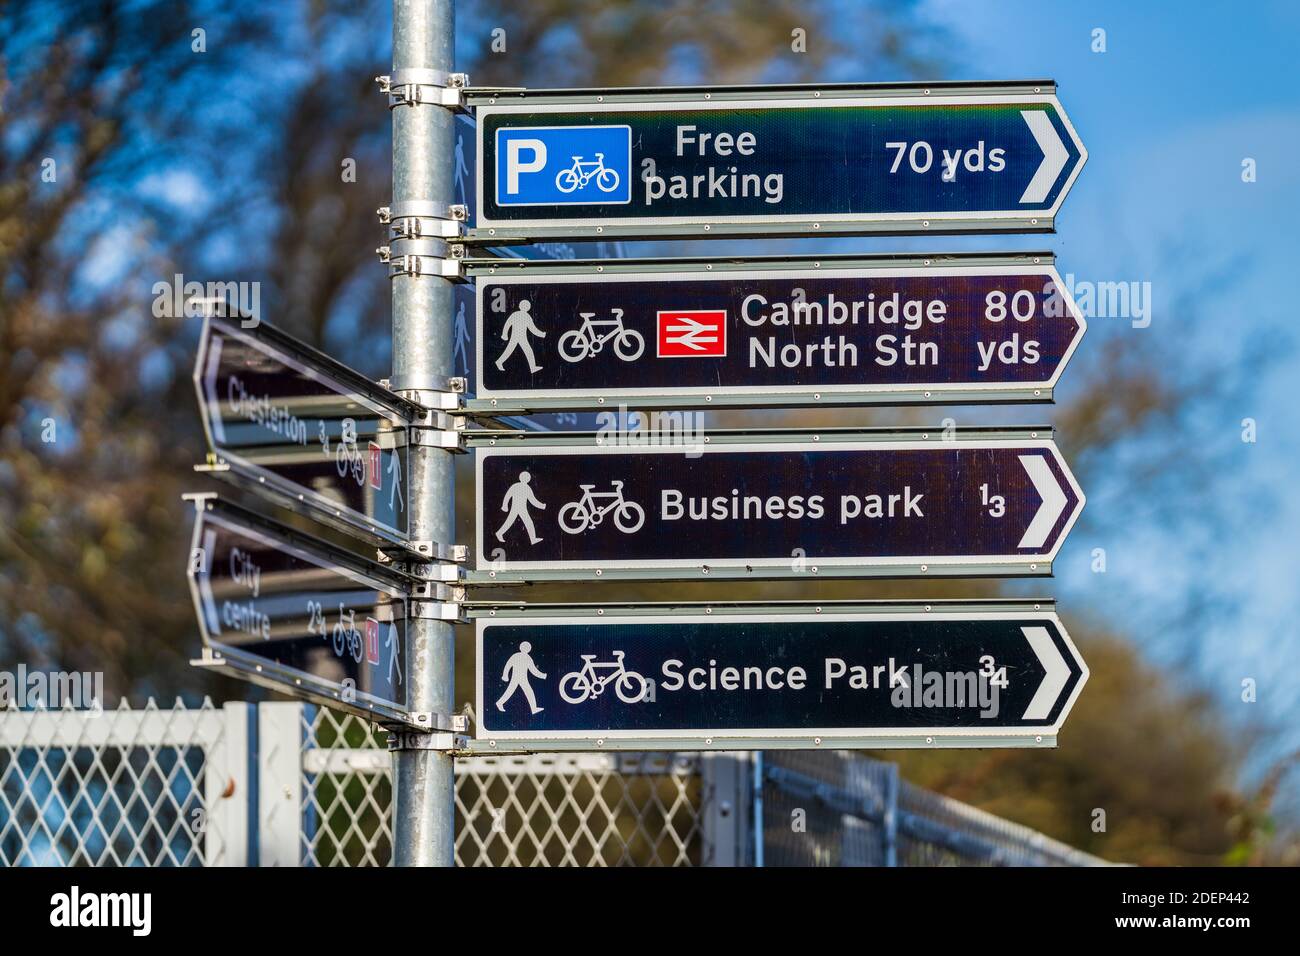 Cambridge North Station Signpost, Cambridge Science Park Signpost, Cambridge Business Park Signpost - señalización de rutas de ciclismo en la Cambridge N Station. Foto de stock